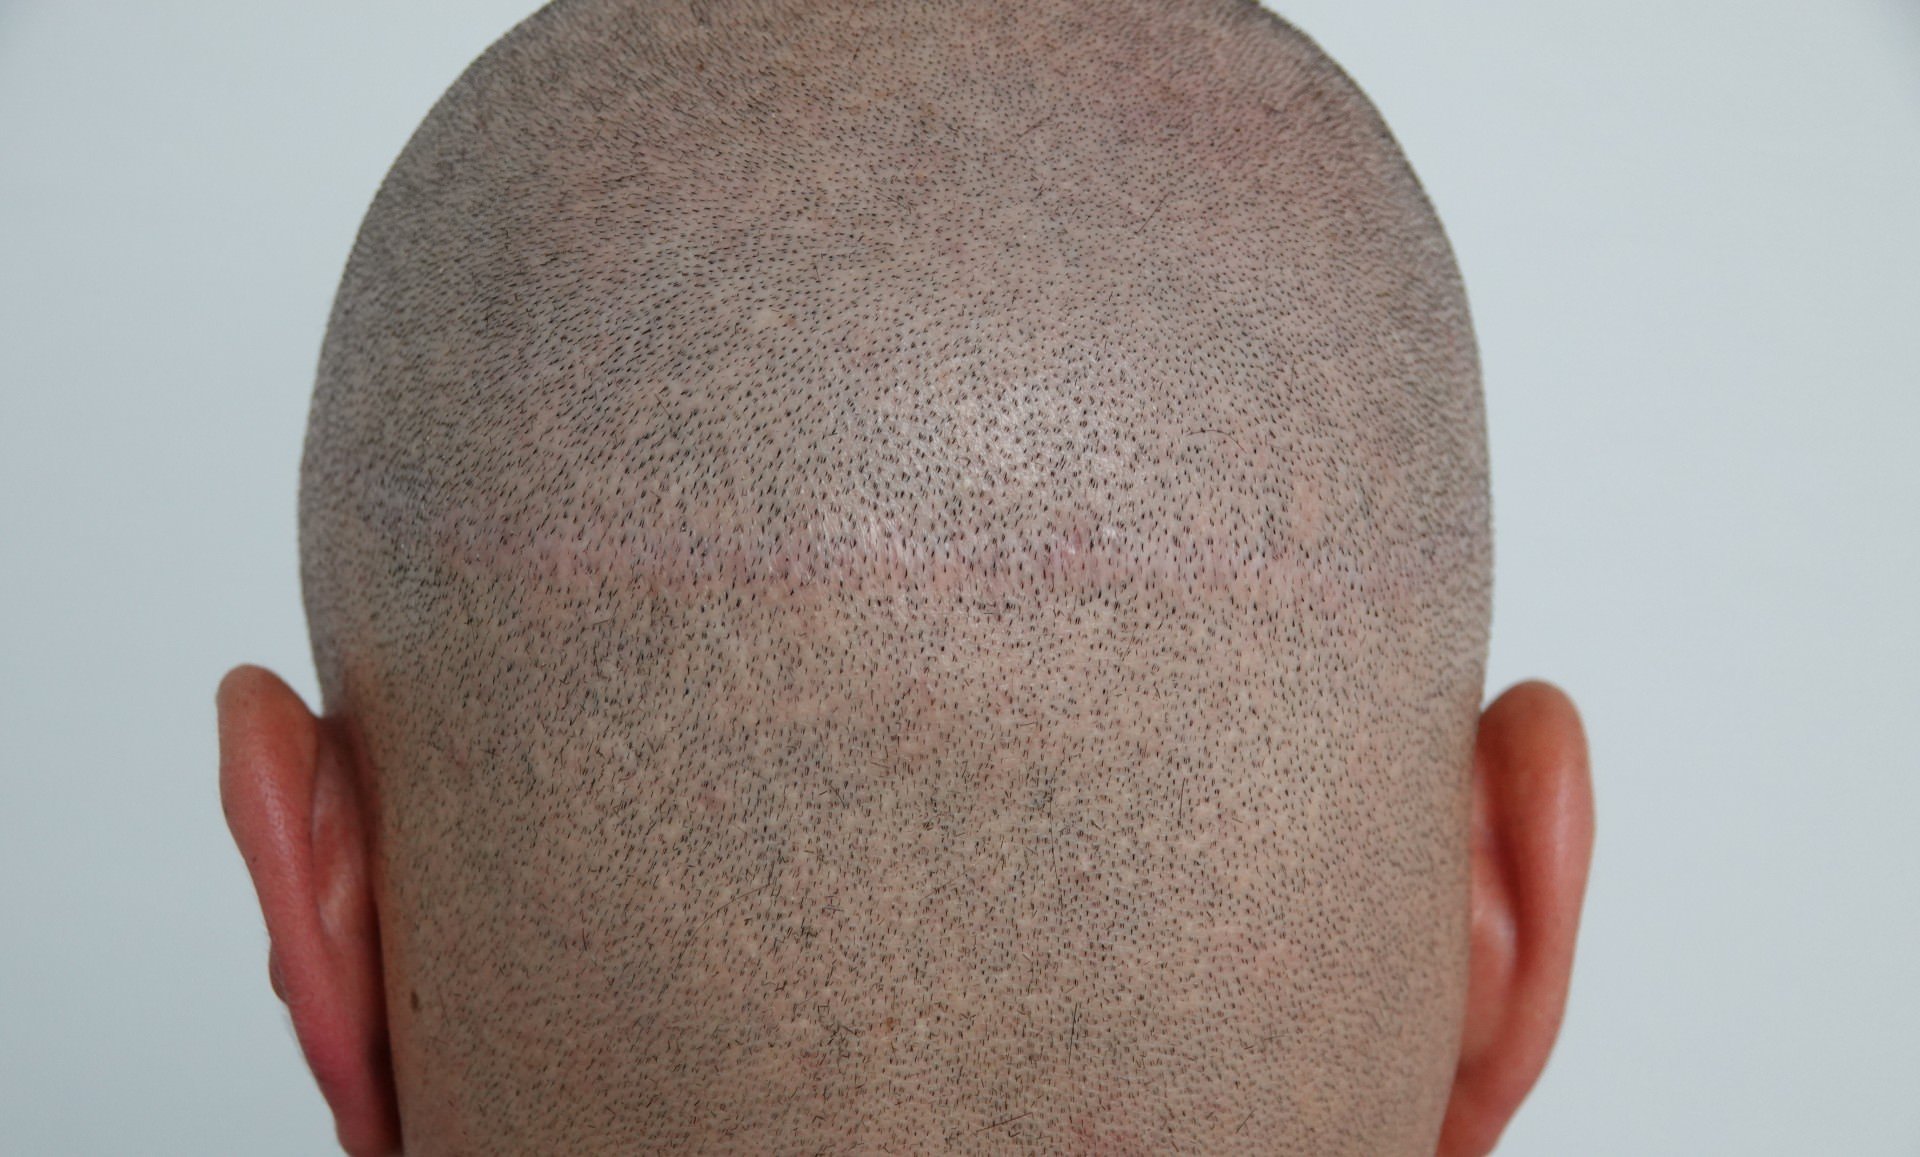 Zu sehen sind wieder wachsende Haare auf einer FUT-Narbe auf dem Hinterkopf eines Patienten.